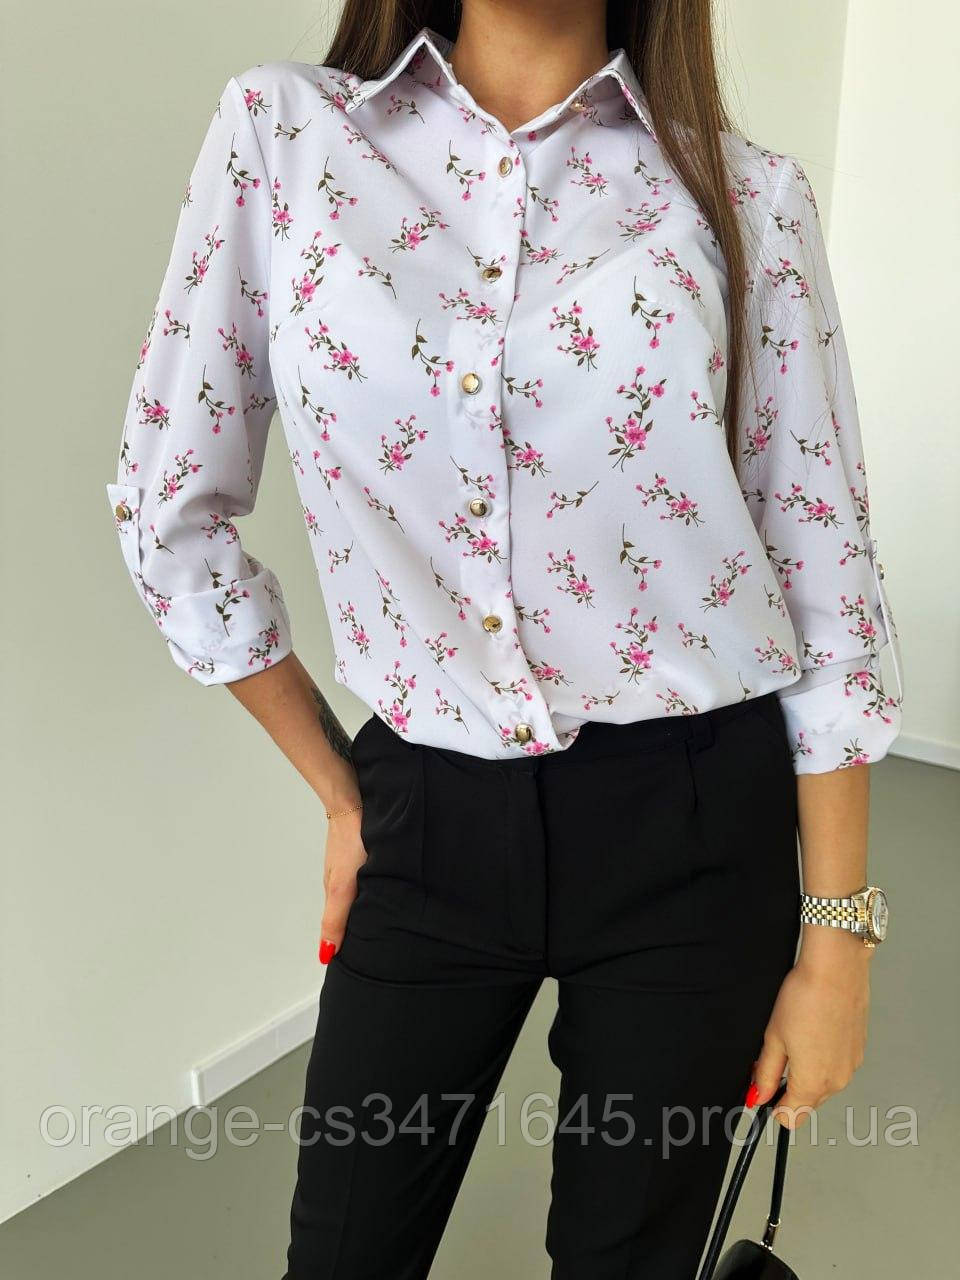 Гарна жіноча біла блузка сорочка софт квітковий принт, жіночі блузки